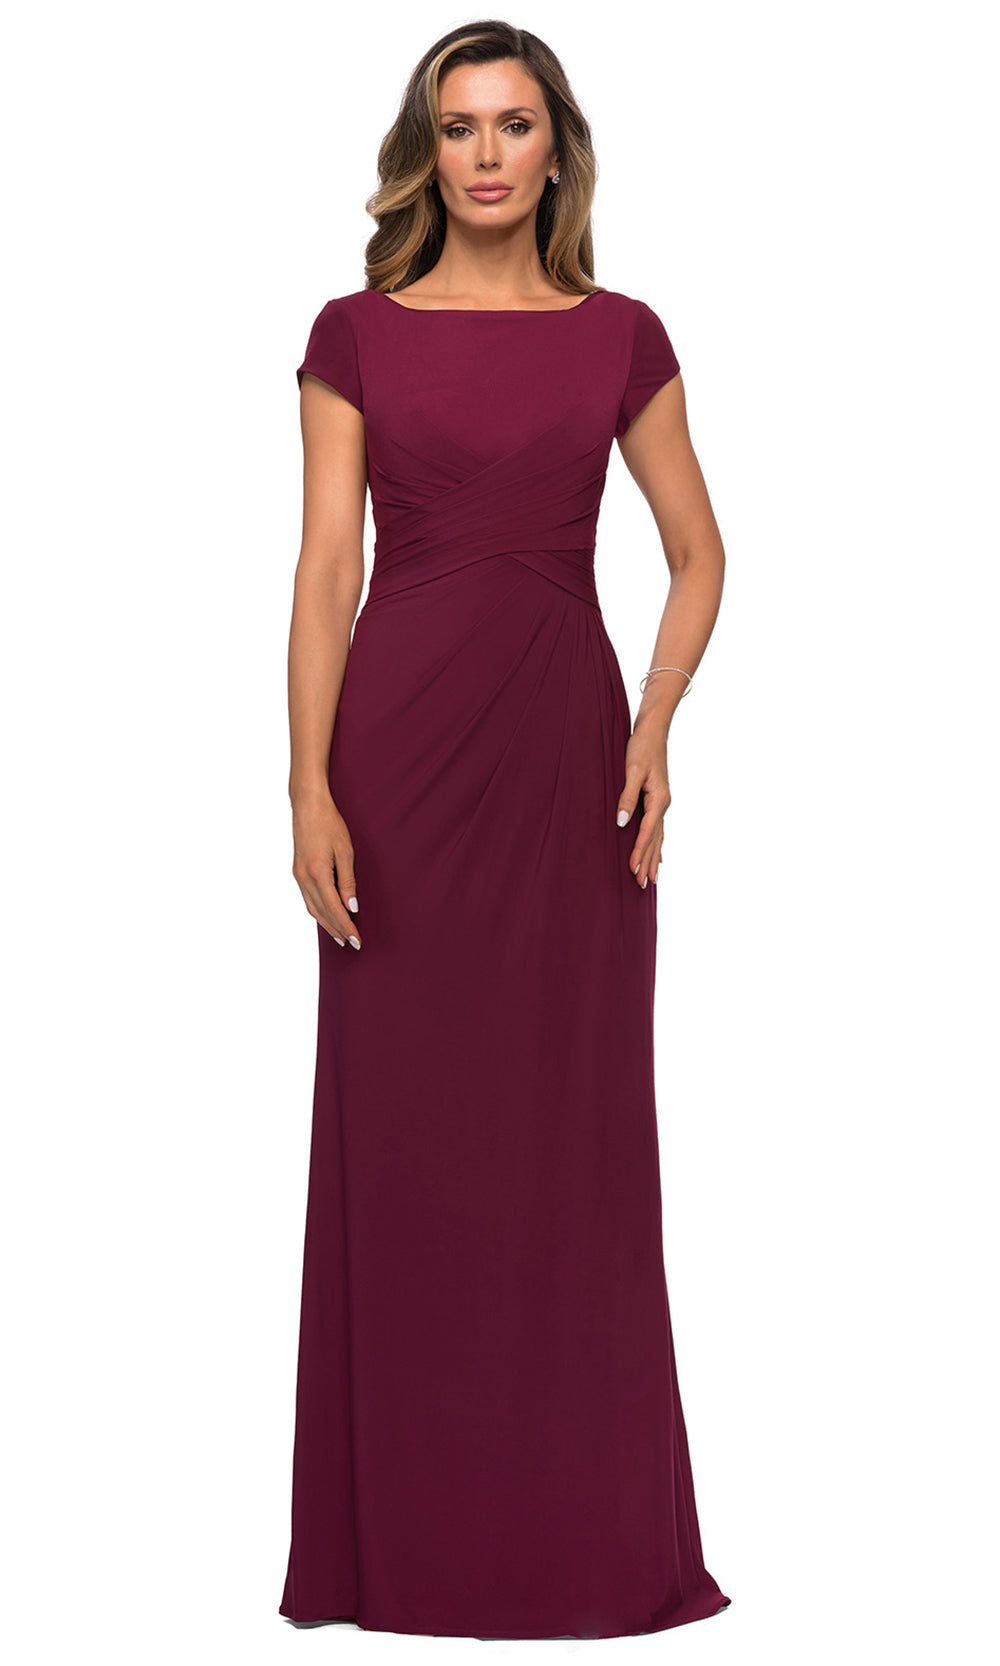 La Femme - 28026 Cap Sleeve Jersey Long Formal Dress In Red